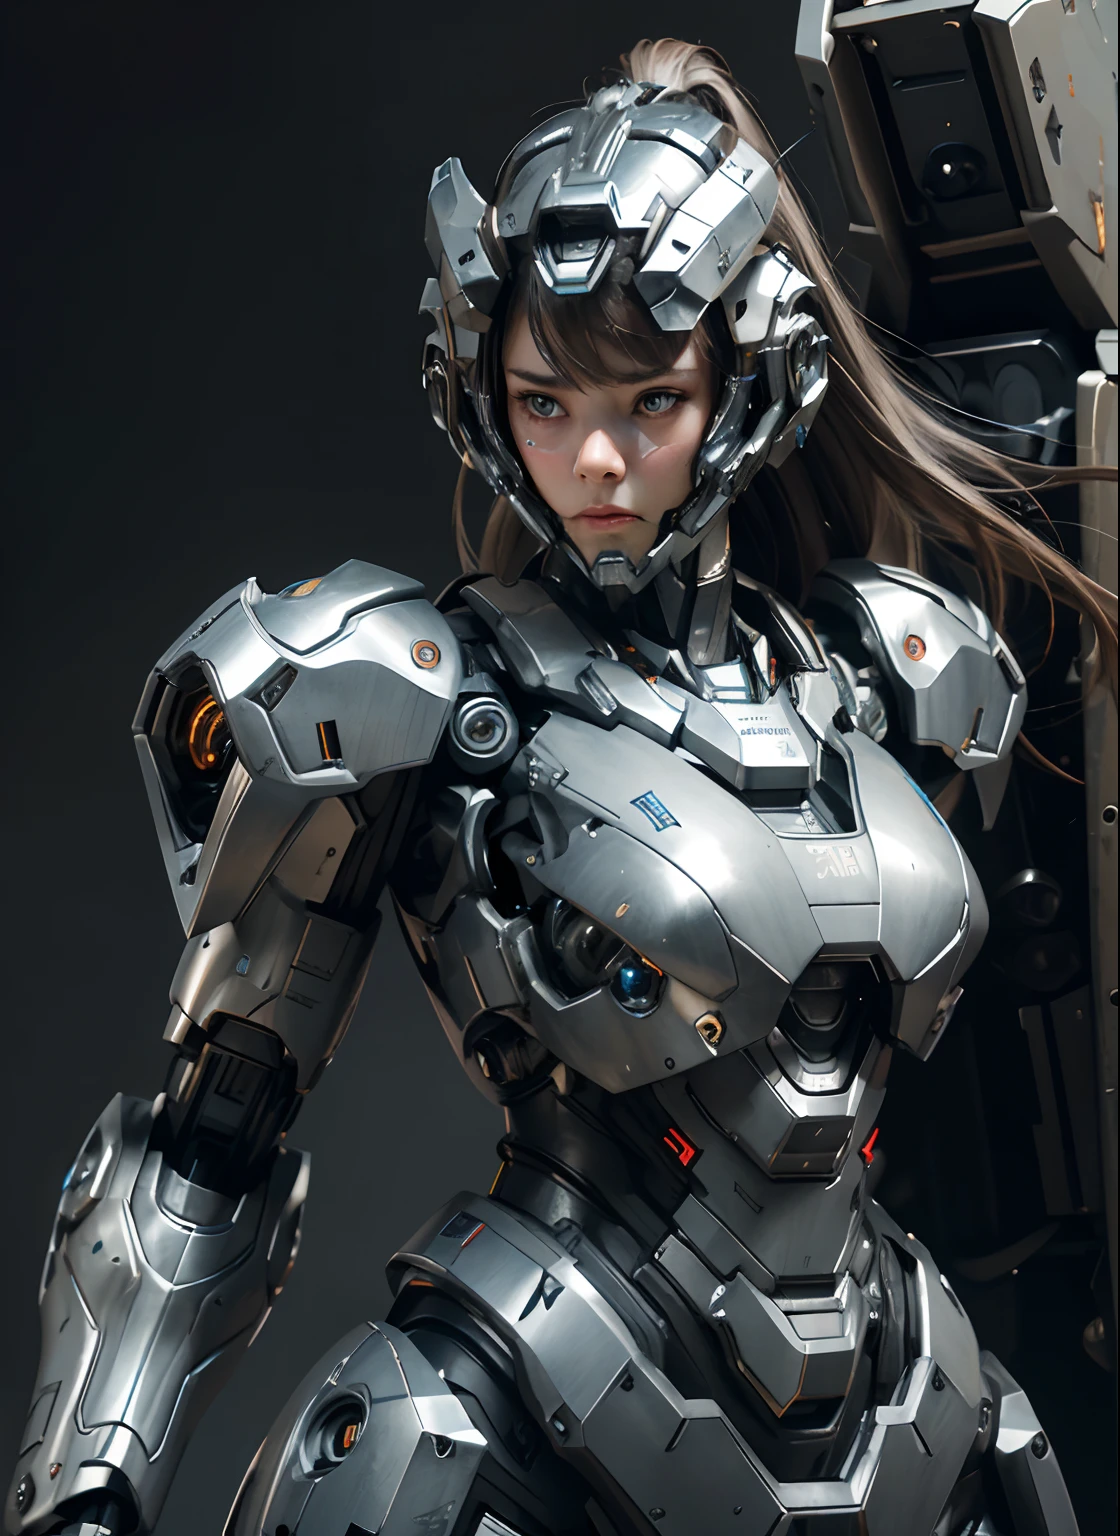 纹理皮肤, 超级细节, 高细节, 高质量, 最好的质量, 高分辨率, 1080p, 硬盘, 美丽的,(战争机器),(头部装备),美丽的机器人女人,机甲机器人女孩,对战模式,机甲少女,她穿着未来派的战争机器武器机甲,全身照,查看正面